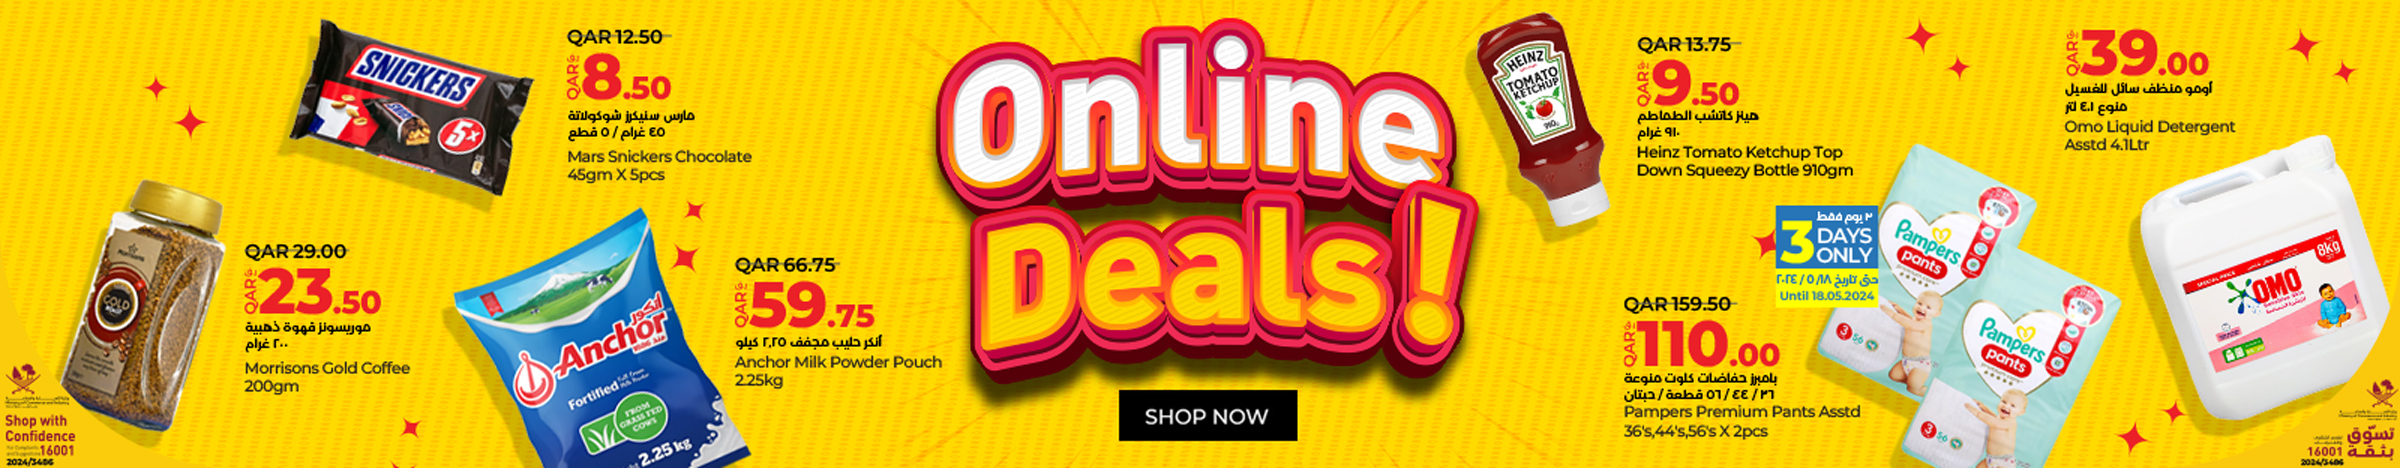 Online Deals May 24 (Web)